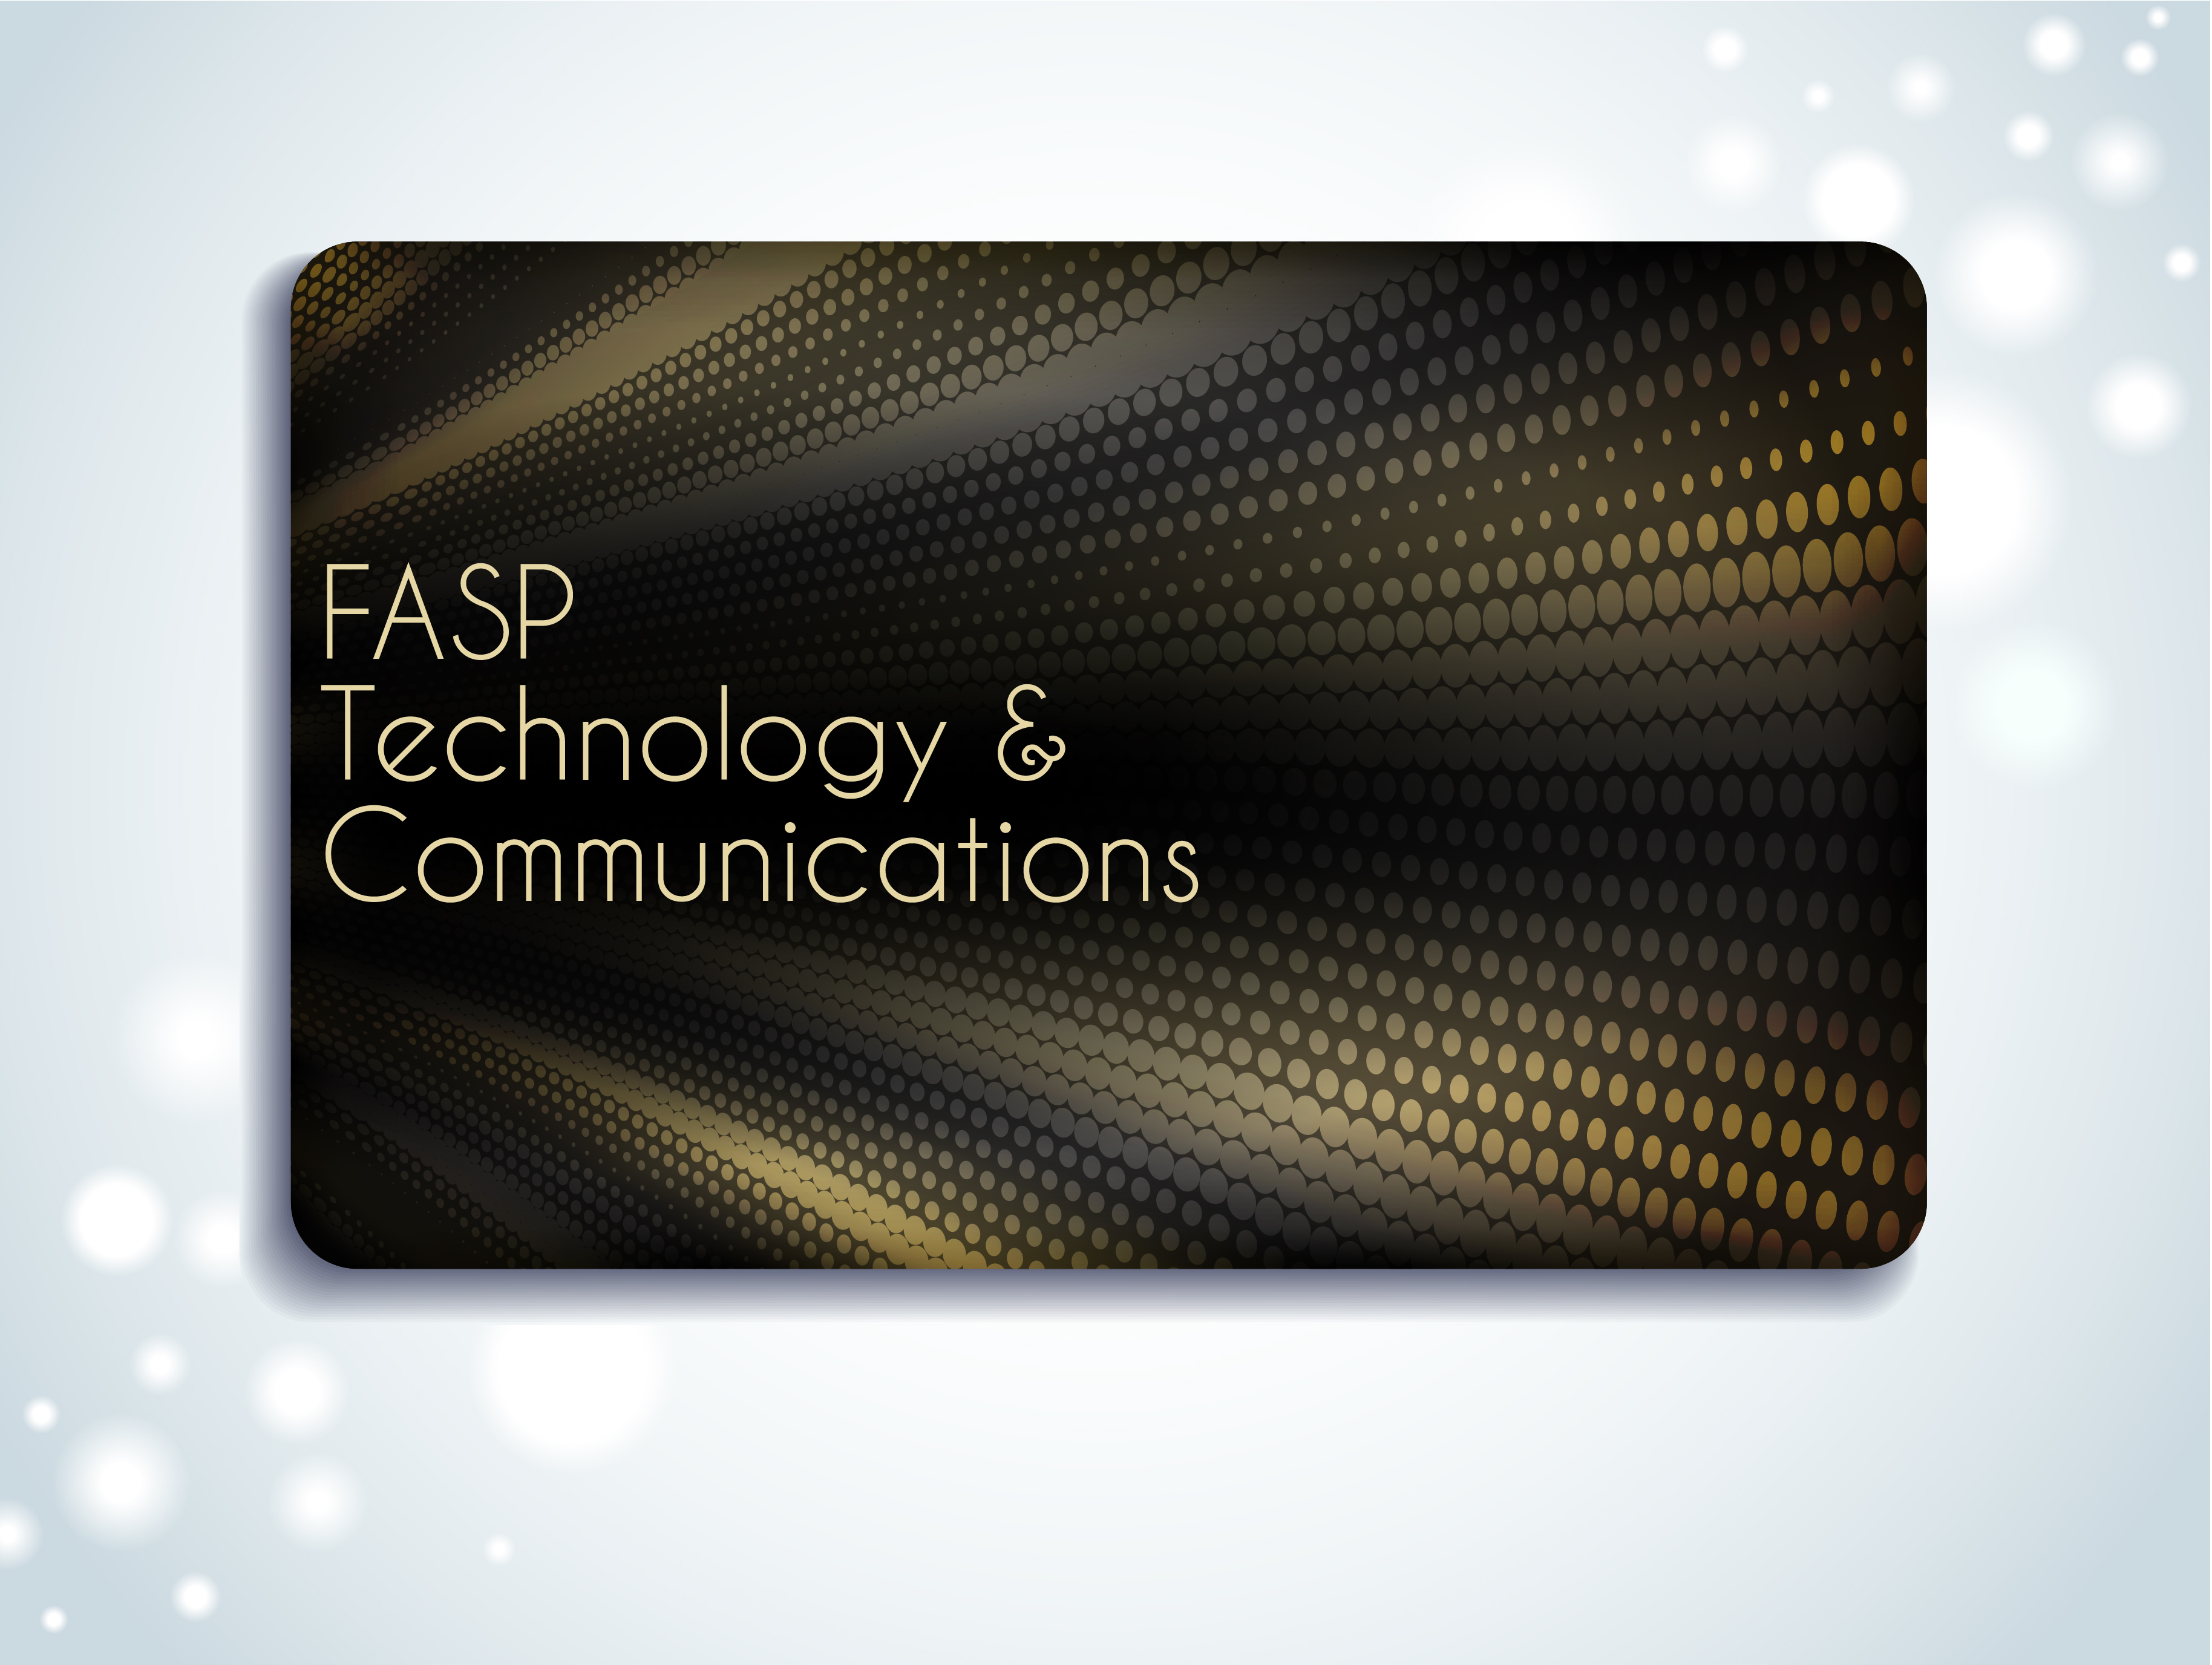 FASP Technology & Communications